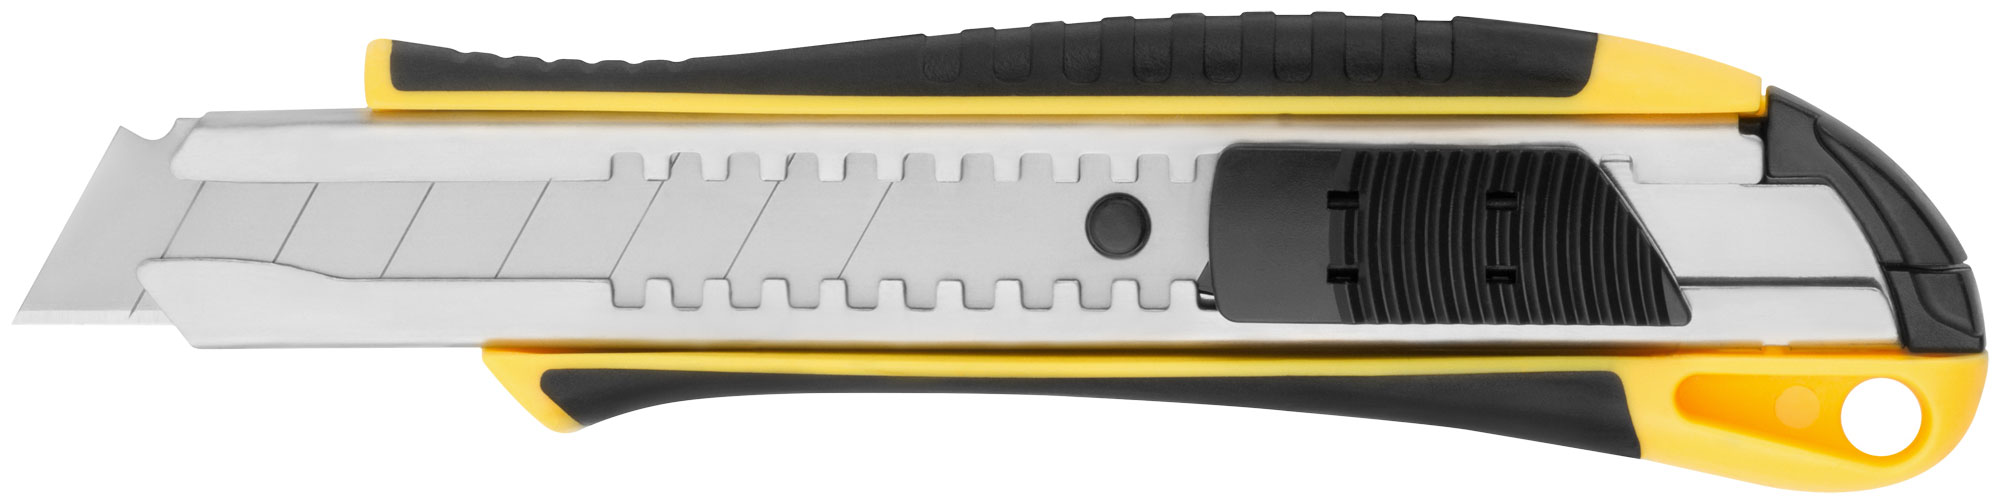 FIT IT  Нож технический 18 мм усиленный прорезиненный, 2-х сторонняя автофиксация нож технический курс контур 10173 18 мм усиленный прорезиненный лезвие 15 сегментов